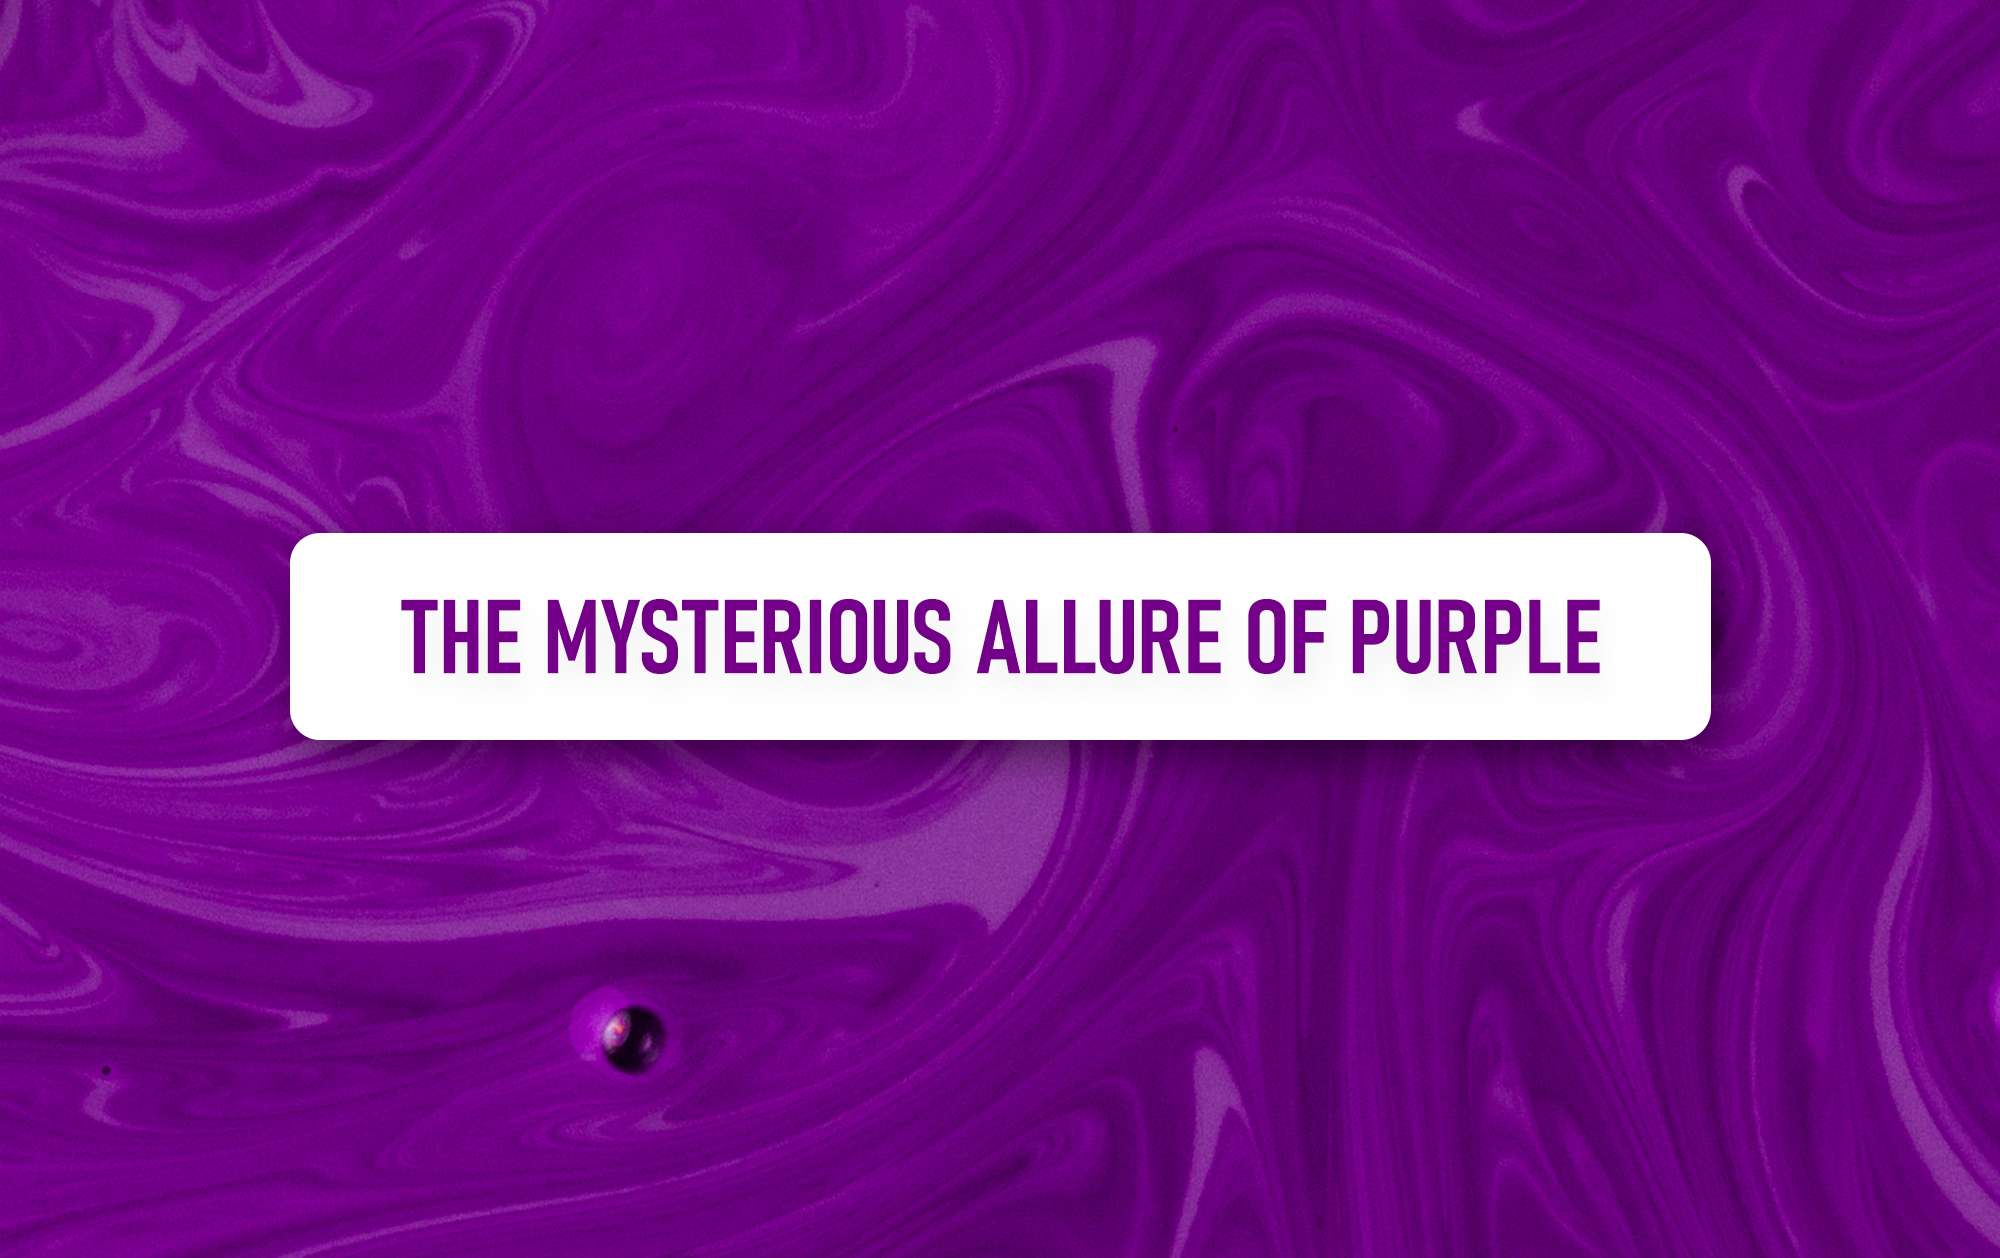 The allure of purple